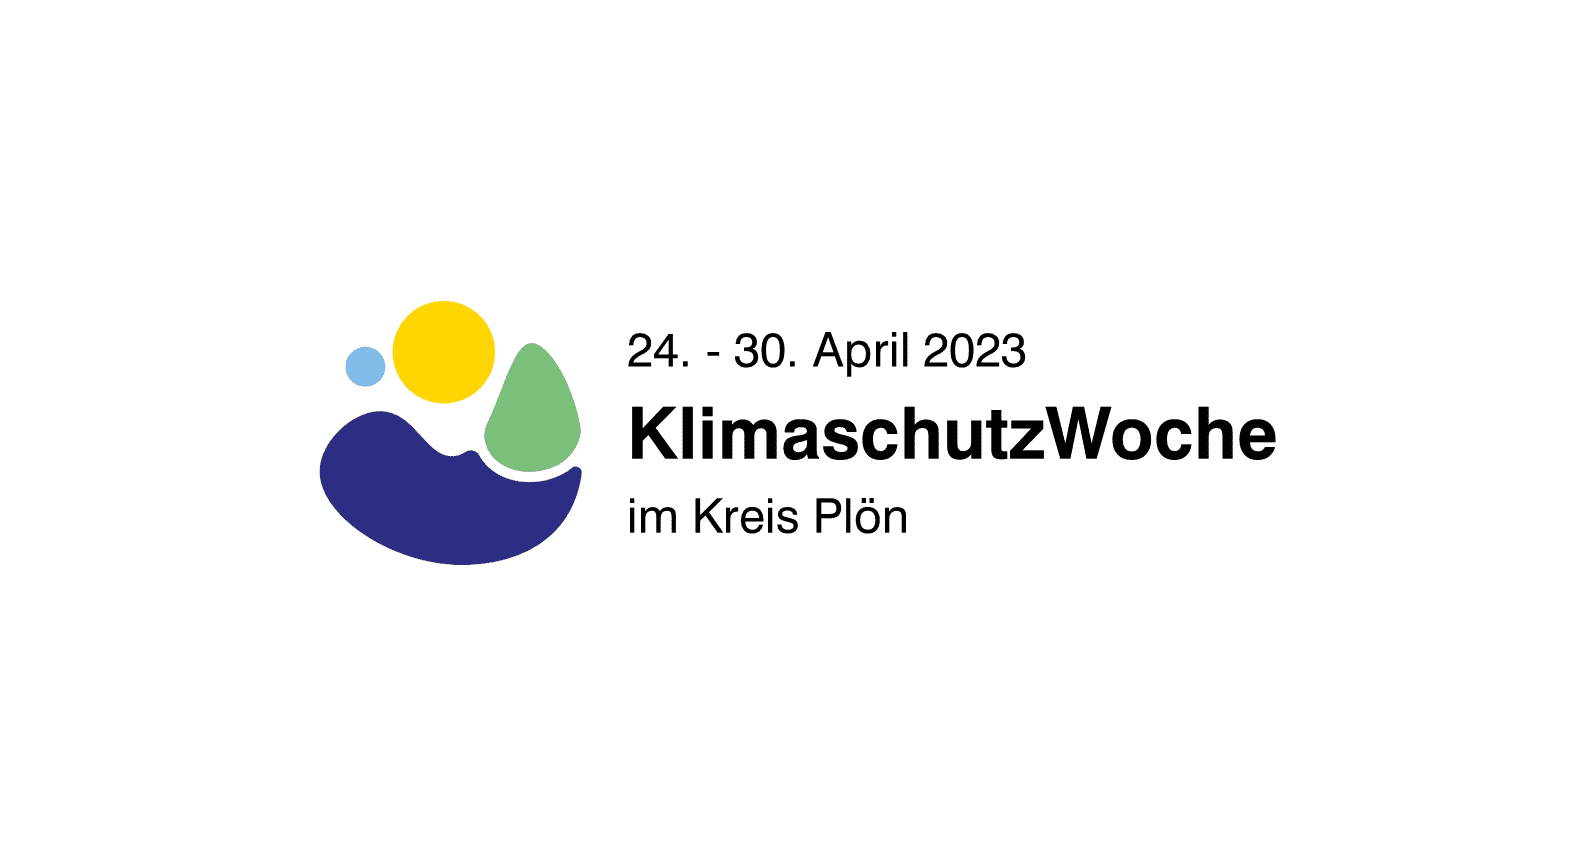 Klimaschutzwoche im Kreis Plön vom 24. - 30.04.2023